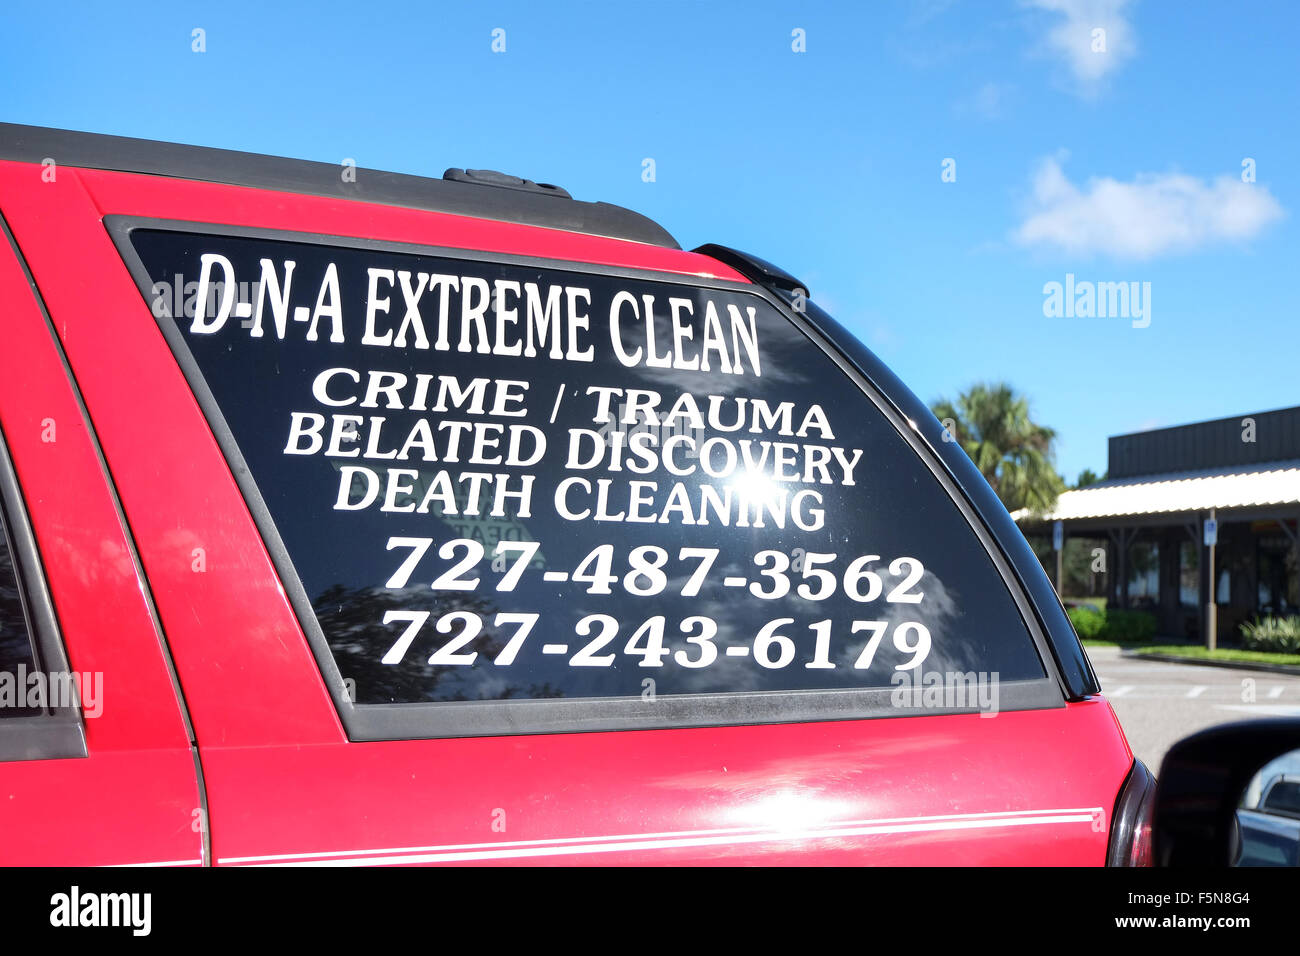 Camion Extreme clean ADN, crime/trauma/découverte tardive / nettoyage décès, Octobre 2014 Banque D'Images